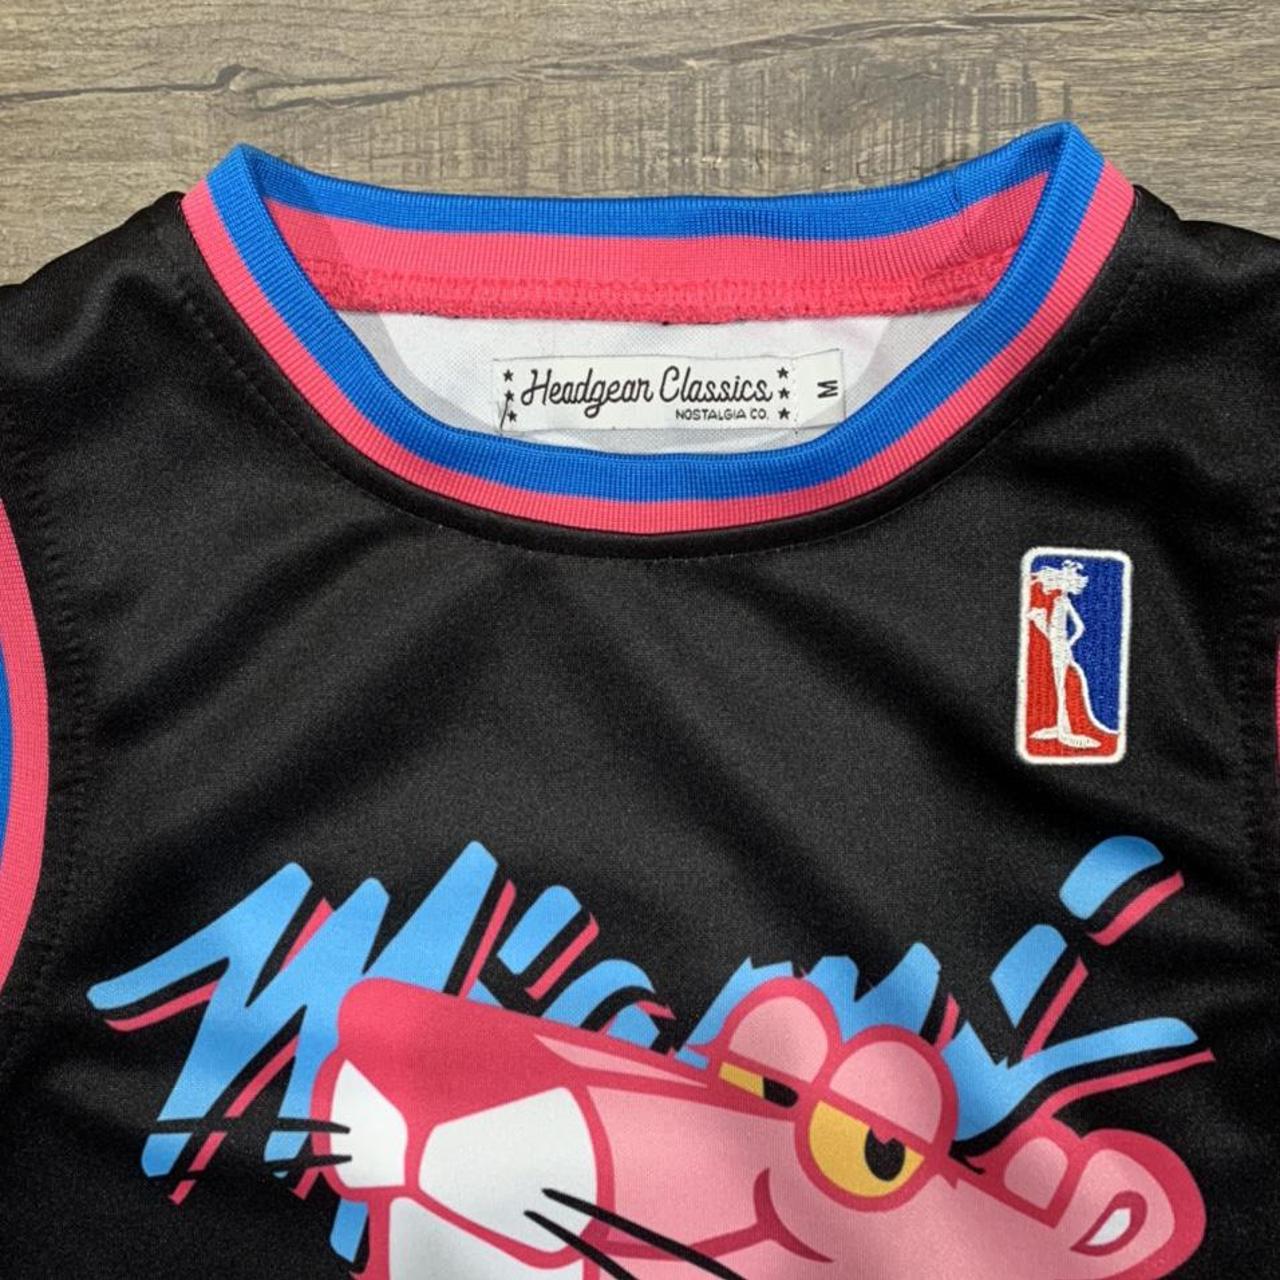 Headgear Classics Pink Panther Basketball Jersey... - Depop